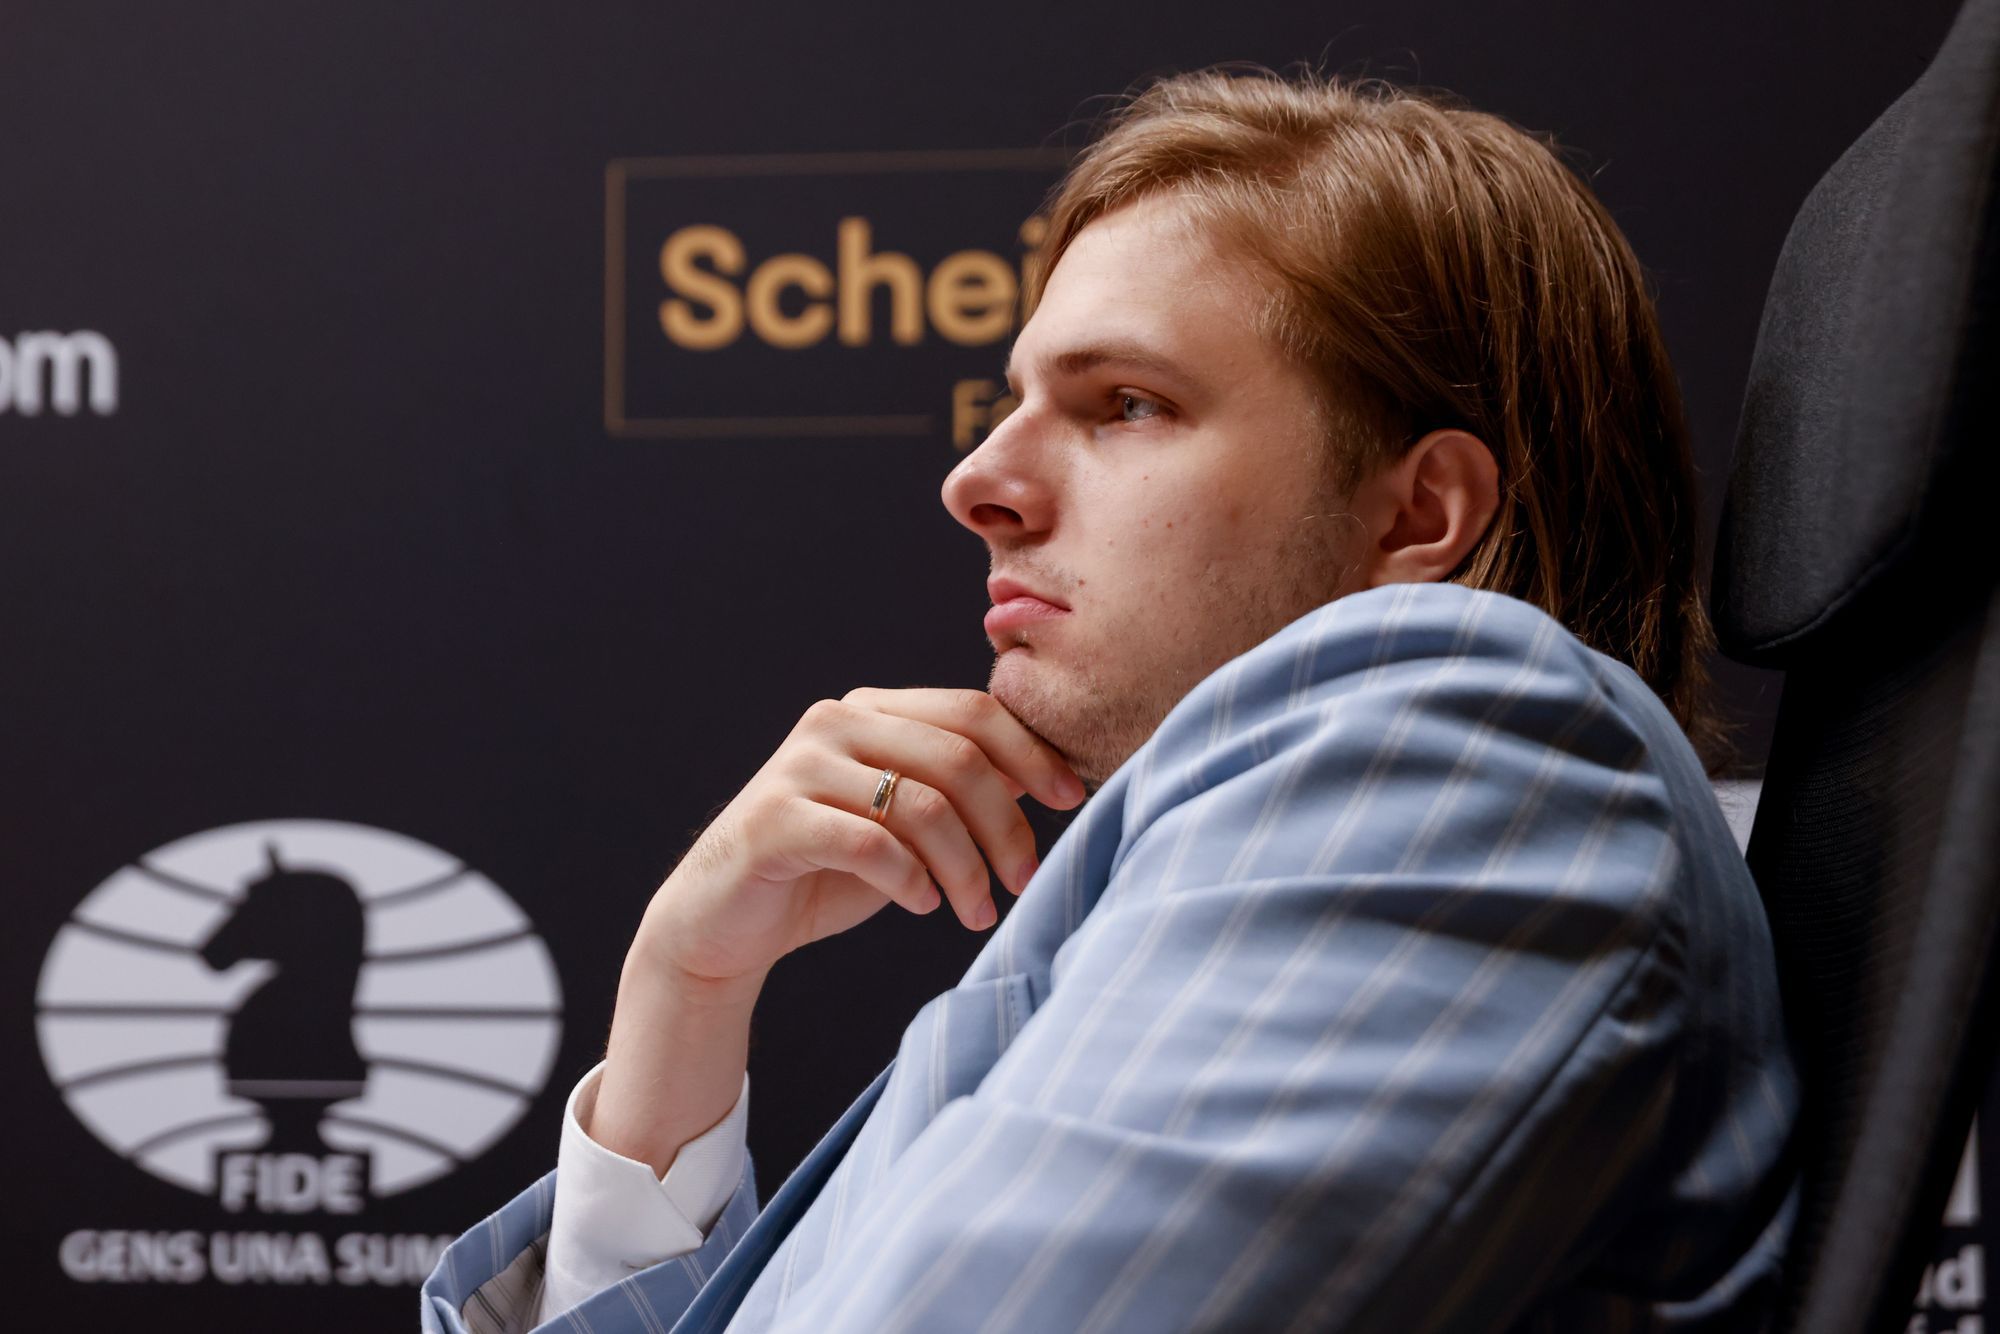 Hivatalossá volt, hogy a magyar sakkozó, Rapport Richárd román színekben versenyzik a jövőben / Fotó: Getty Images